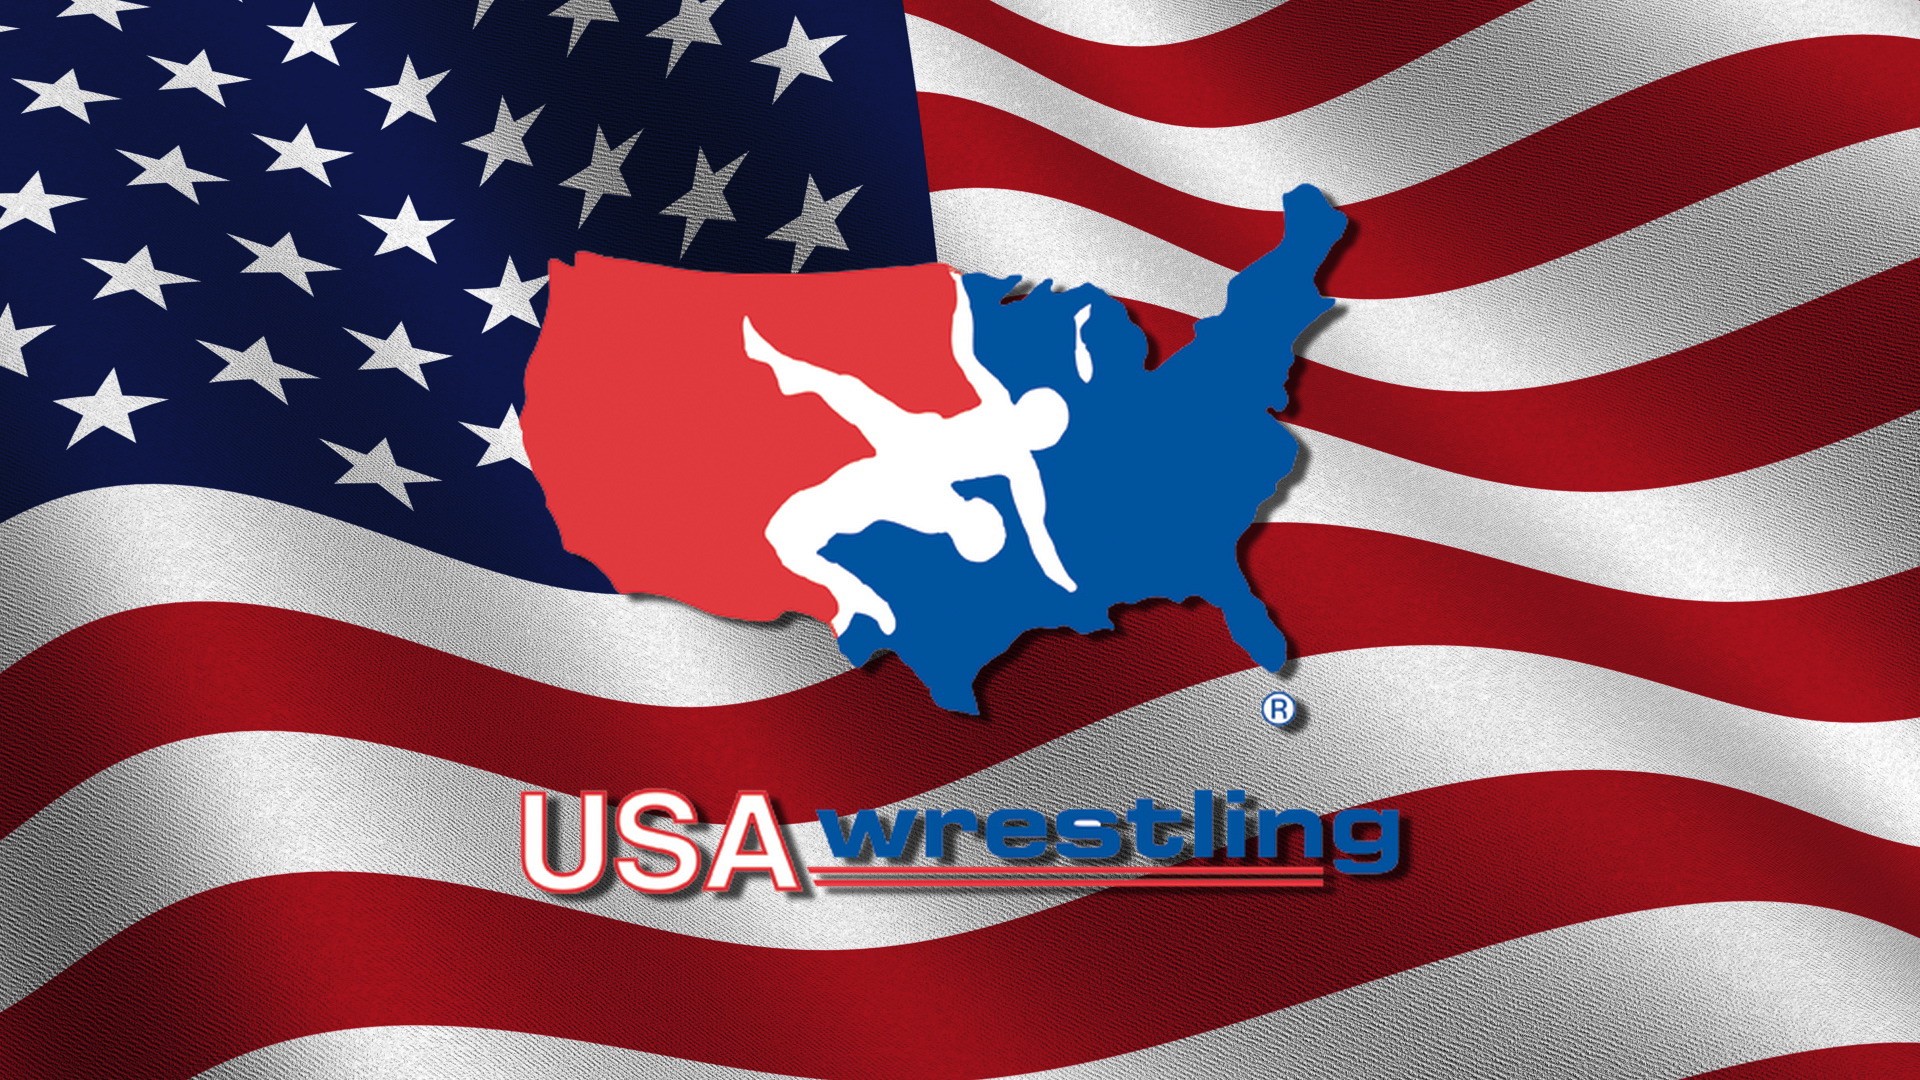 USA Wrestling Wallpapers - WallpaperSafari